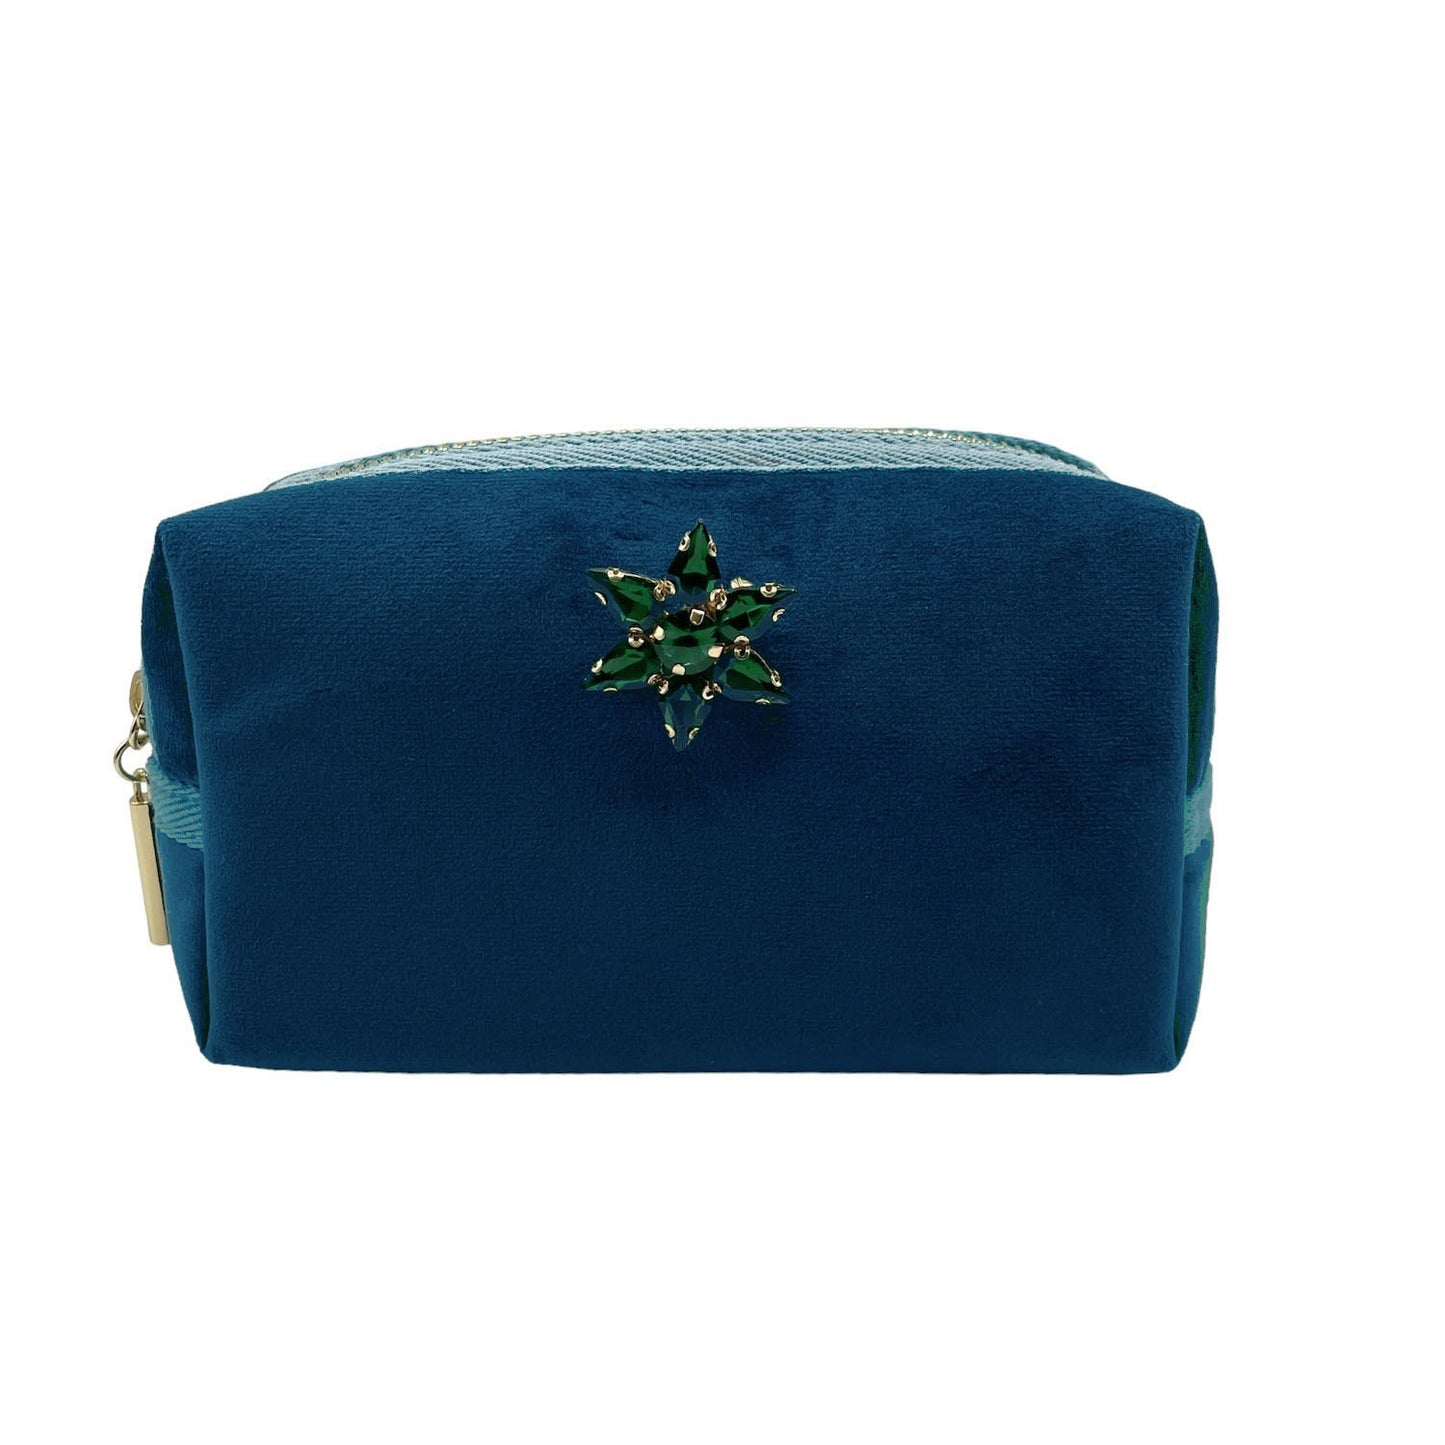 Blue make-up bag & sparkle star pin - recycled velvet